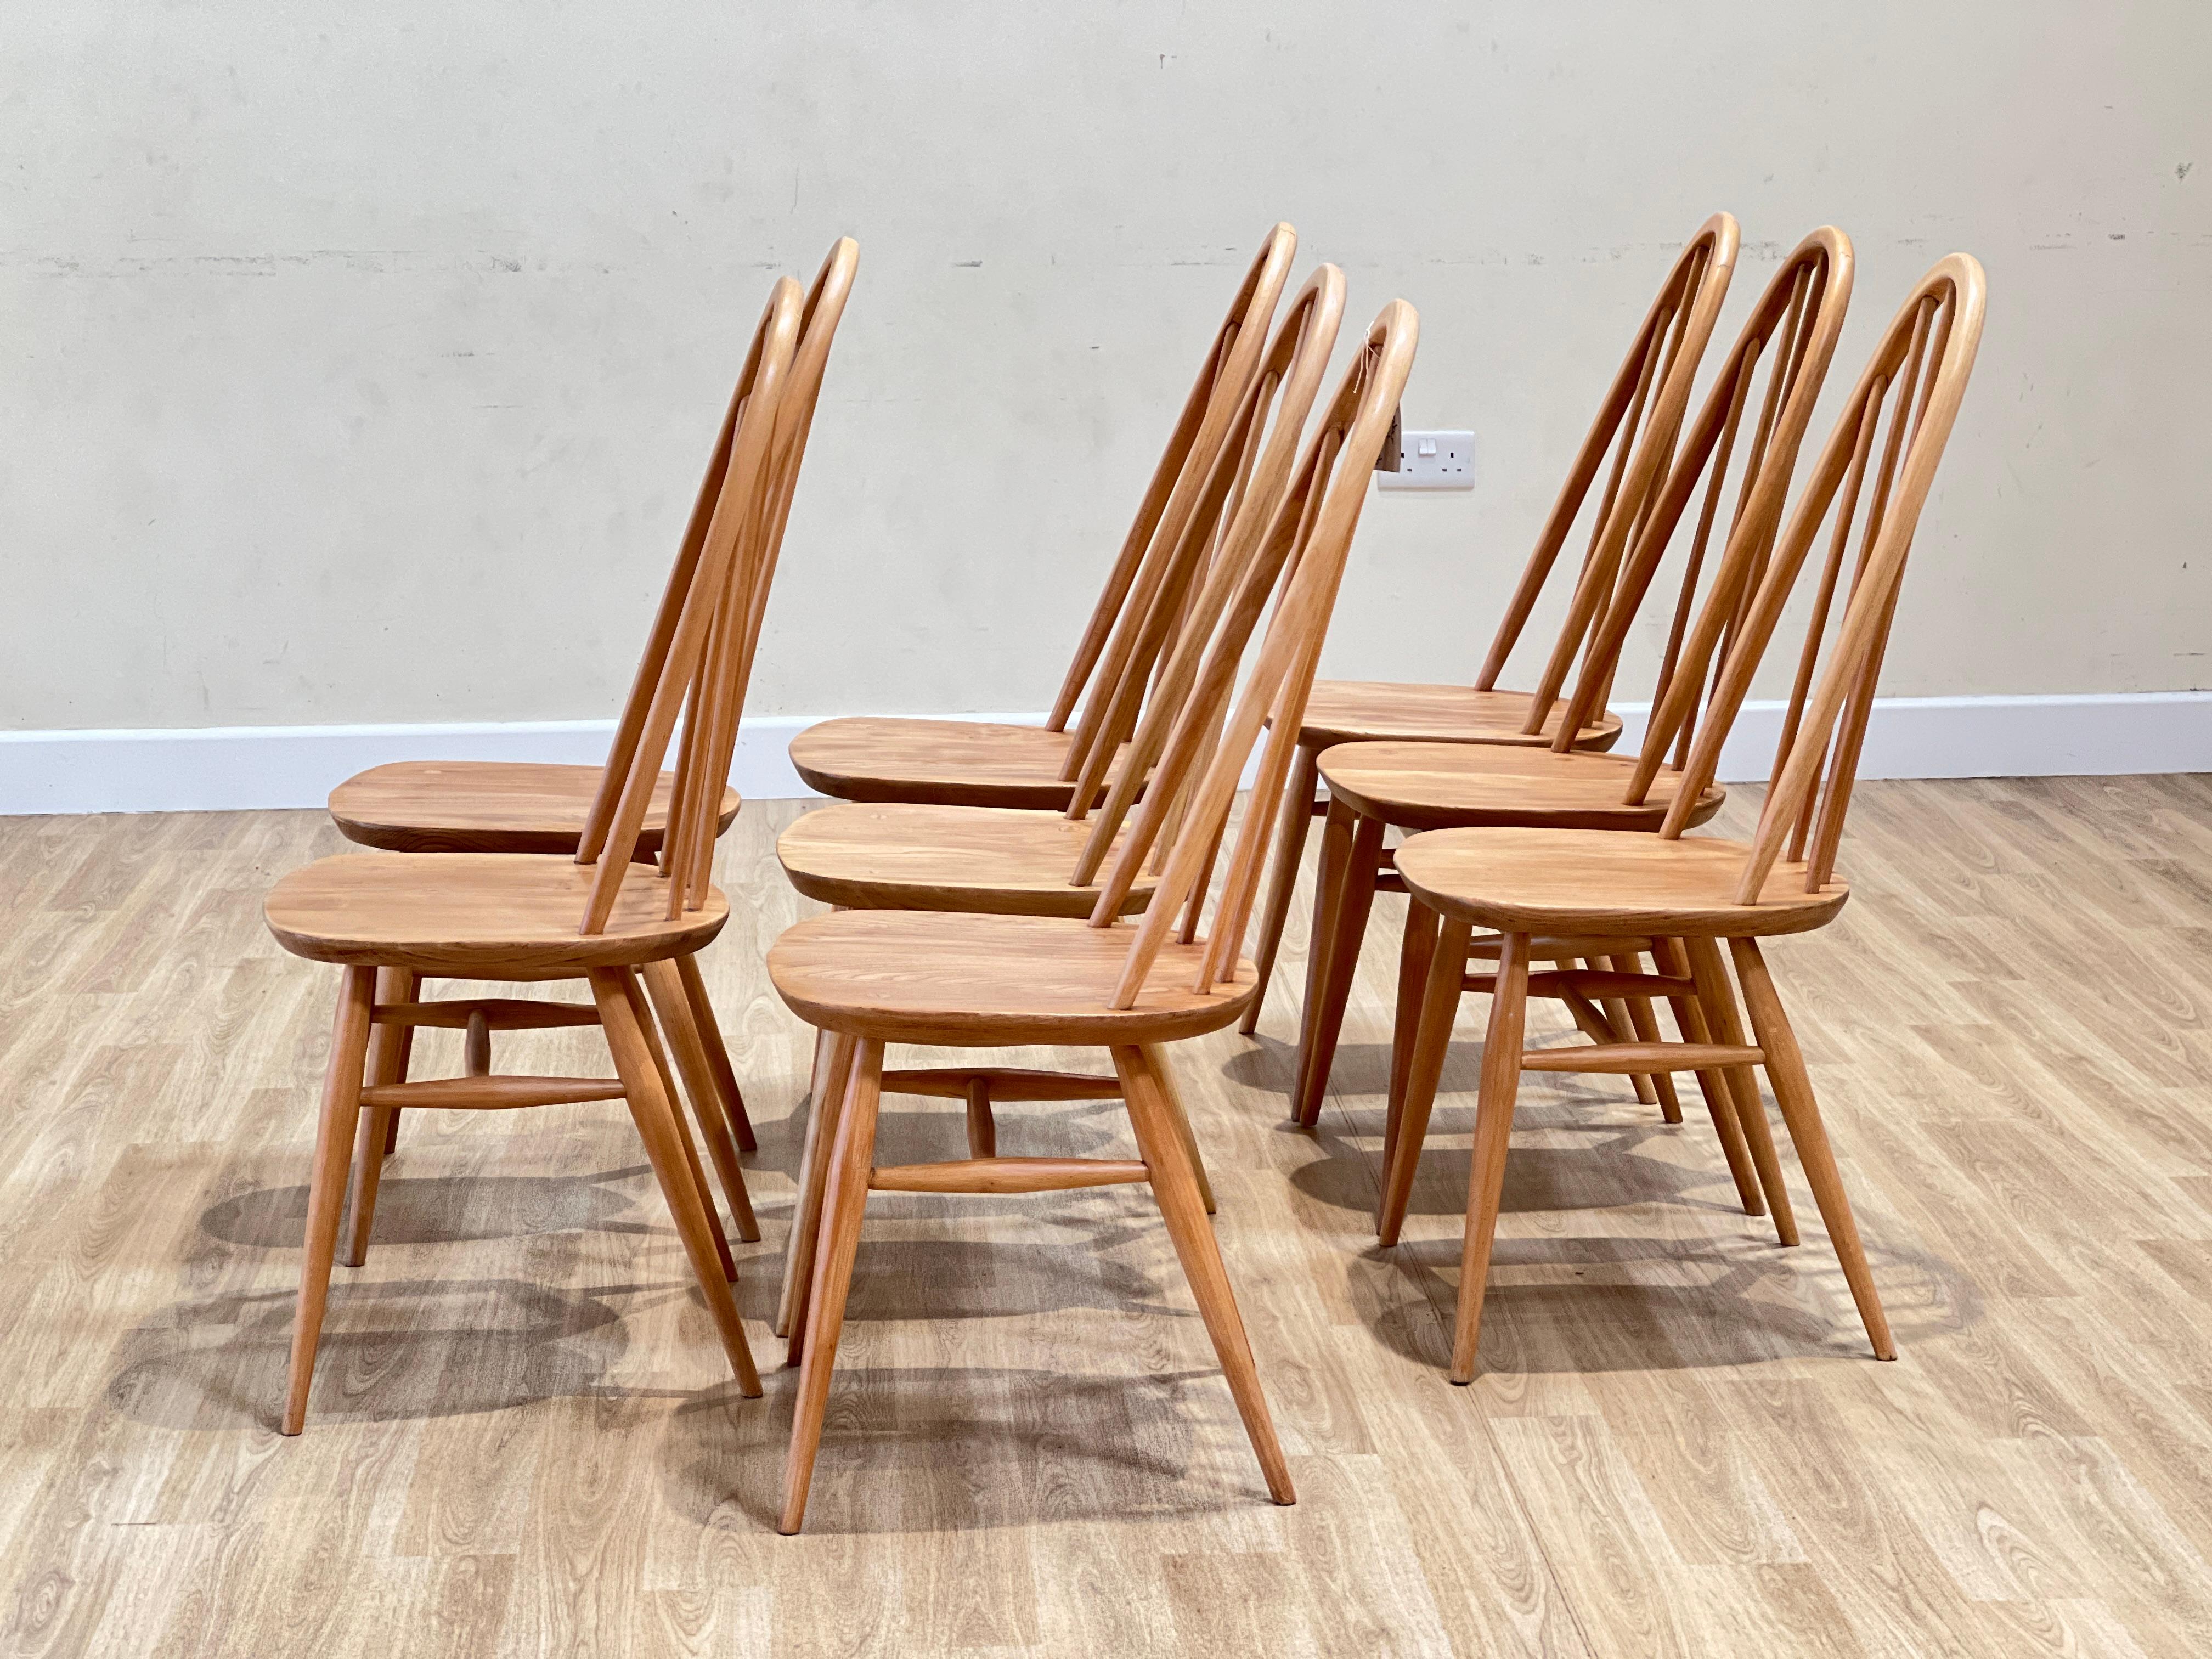 Ces chaises ont été conçues par Luciano Ercoloni en Angleterre dans les années 1960. Ils font partie de la collection Windsor, réputée pour sa beauté intemporelle et son savoir-faire artisanal. Les chaises sont fabriquées à la main en utilisant du